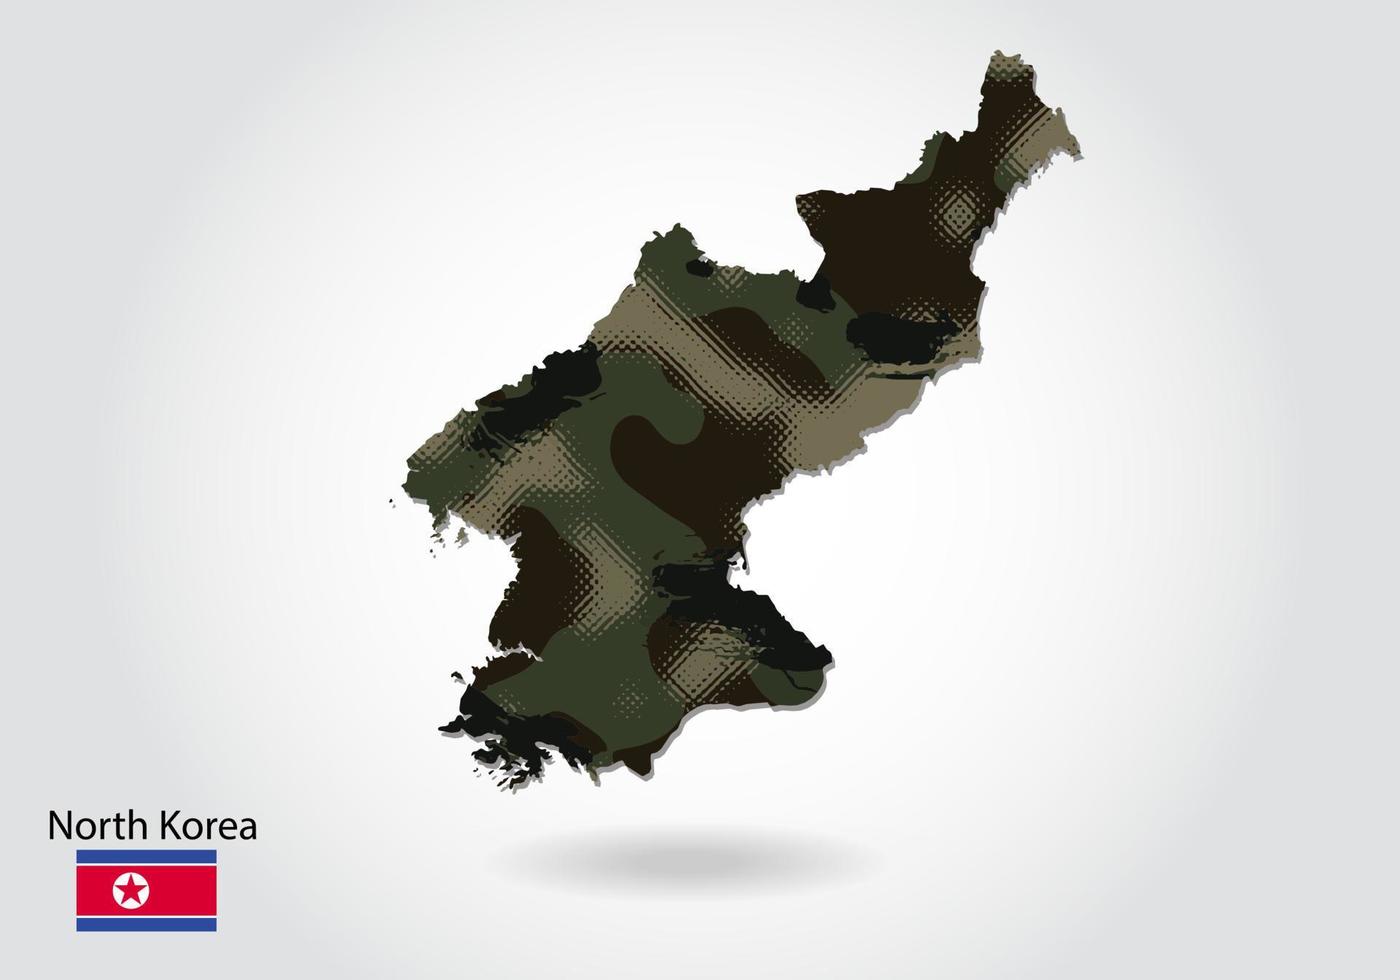 mapa da coreia do norte com padrão de camuflagem, floresta - textura verde no mapa. conceito militar para exército, soldado e guerra. brasão, bandeira. vetor